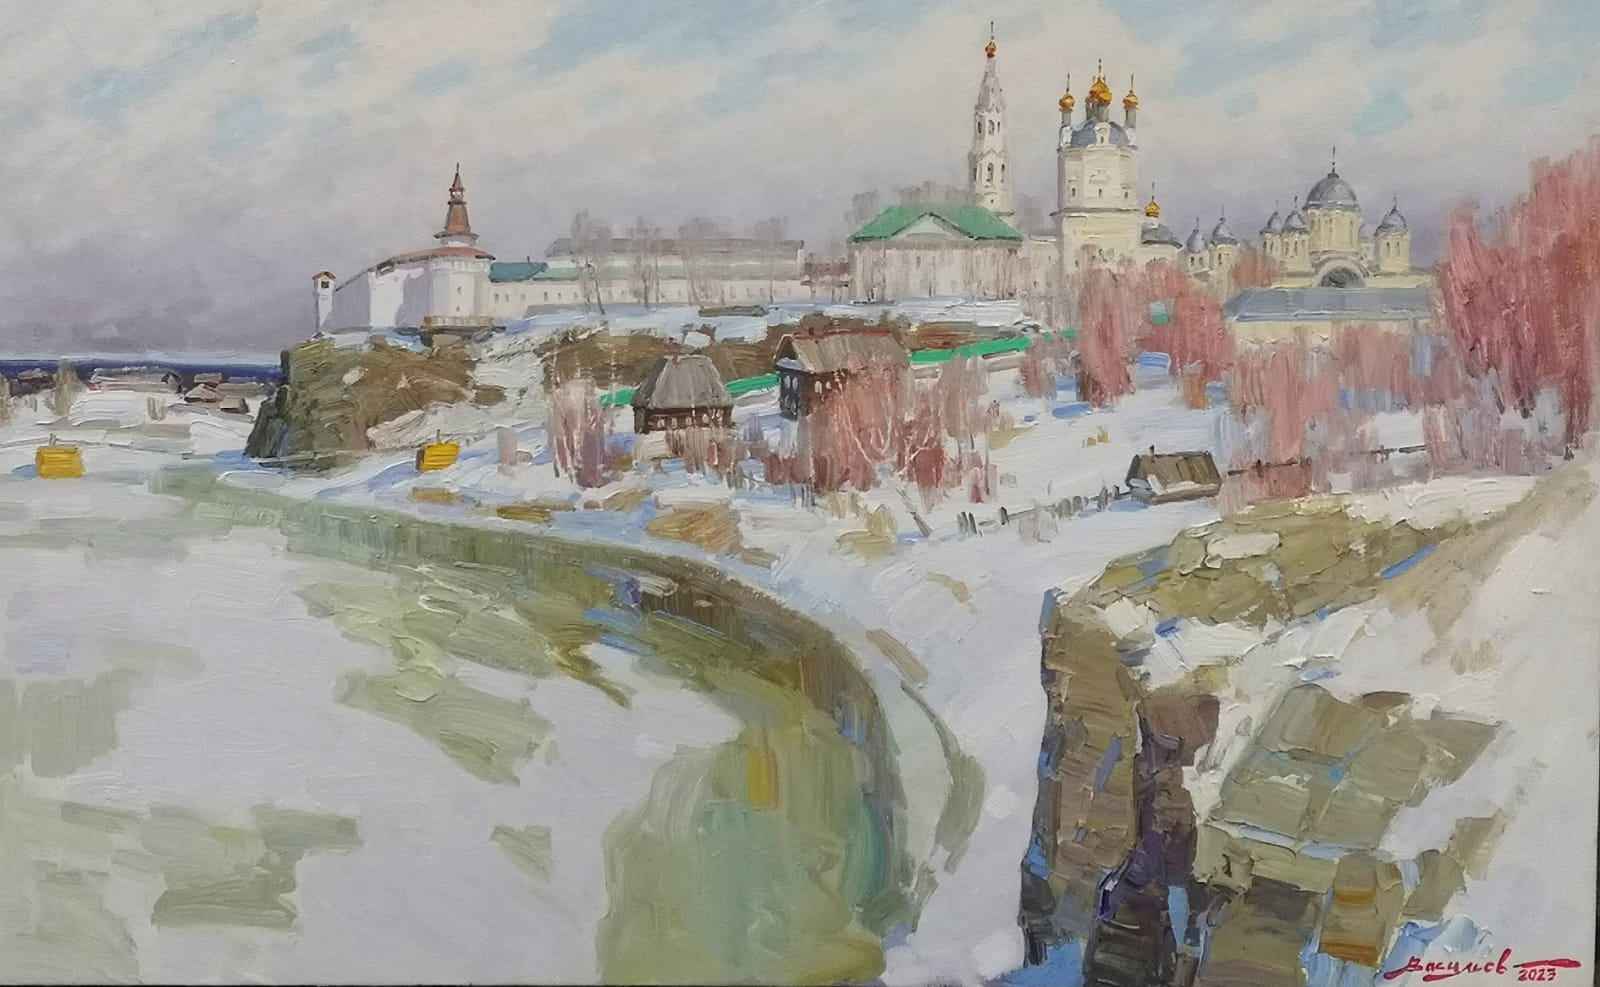 The Thaw in Verkhoturye - 1, Dmitry Vasiliev, Buy the painting Oil